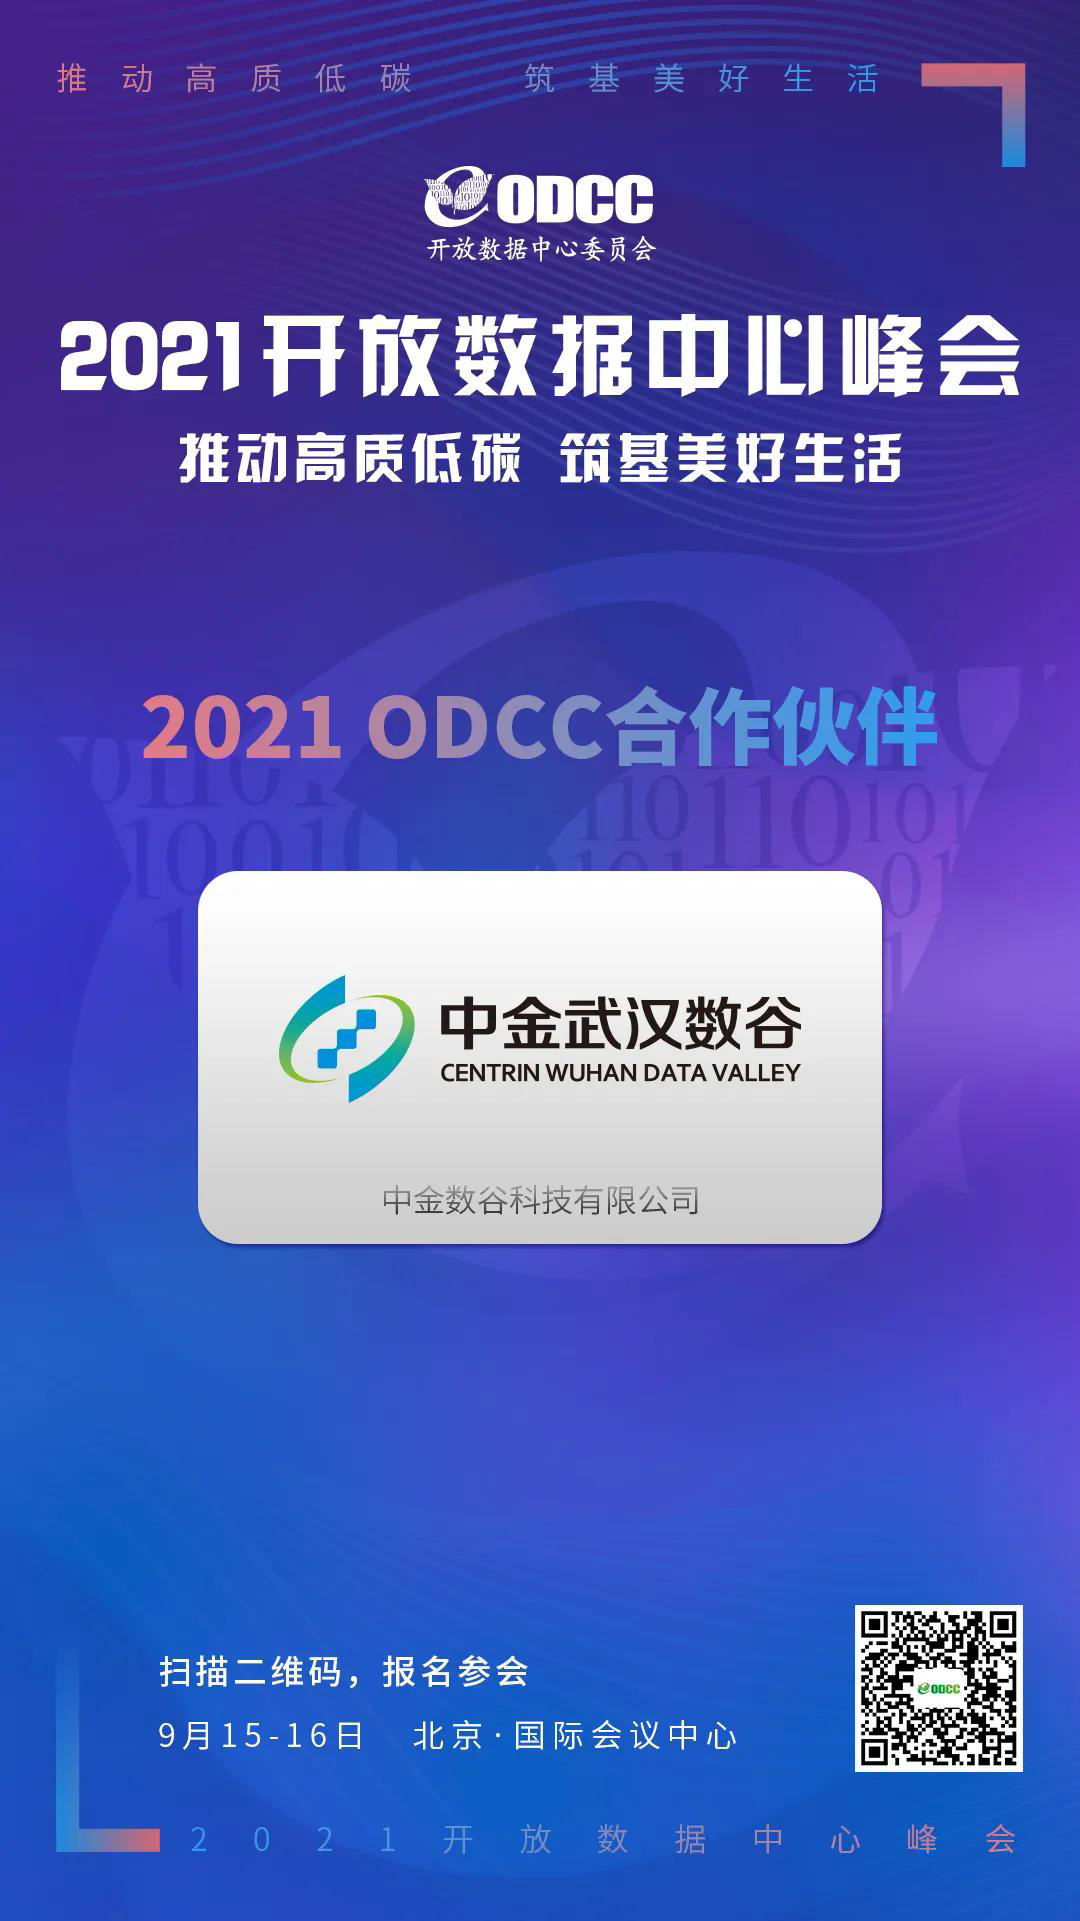 中金數谷受邀參展ODCC 2021開放數據中心峰會